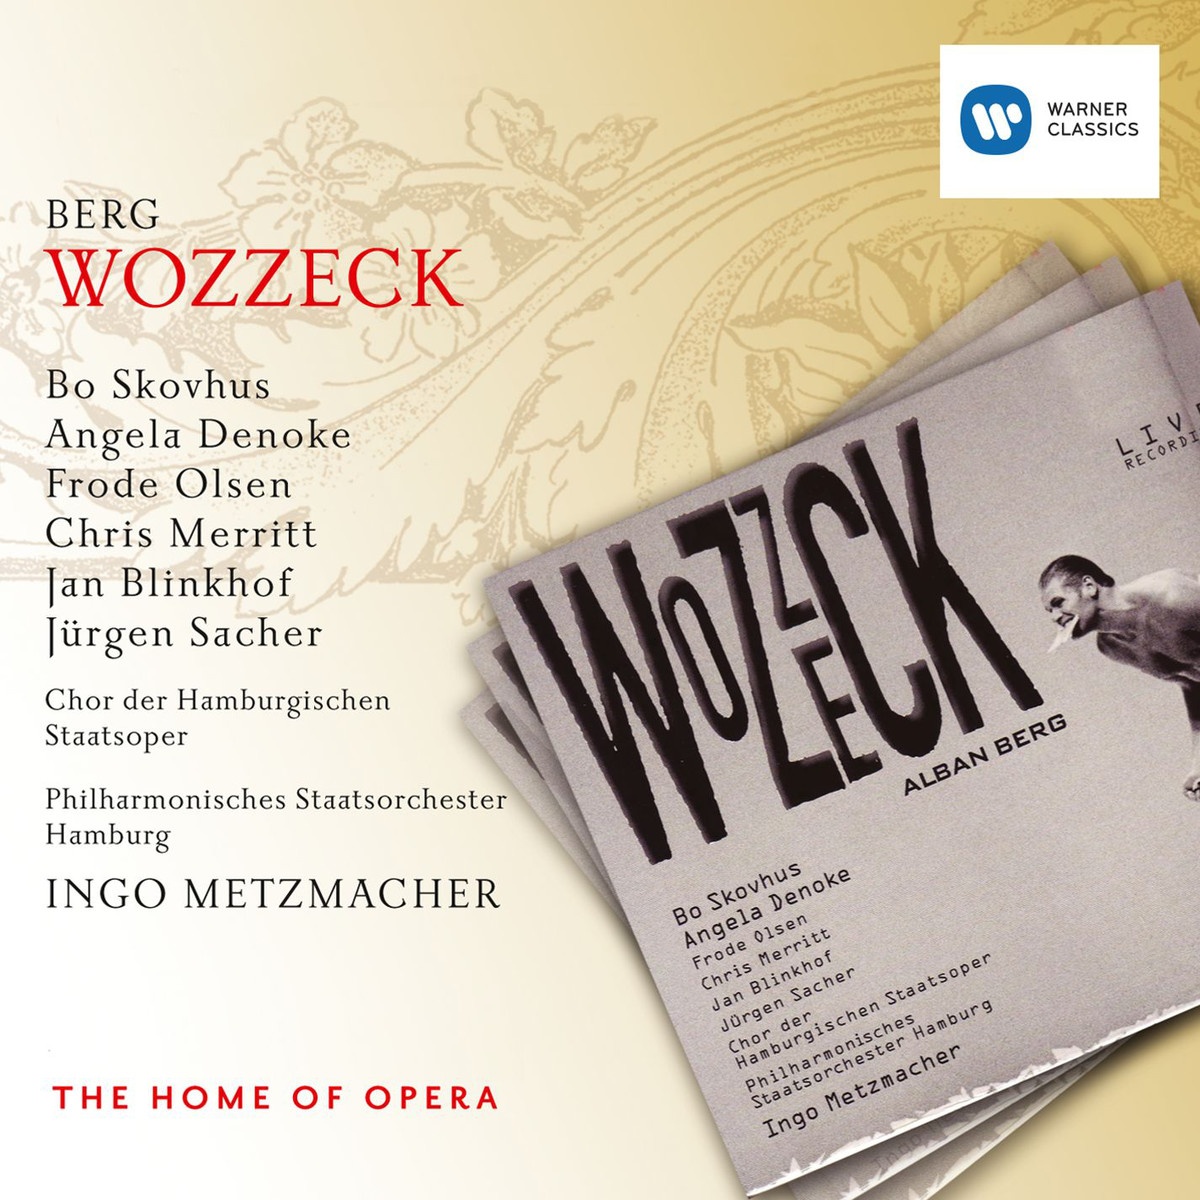 Wozzeck  Oper in 3 Akten, Erster Akt: Was erleb' ich, Wozzeck? 4. Szene: Doktor  Wozzeck